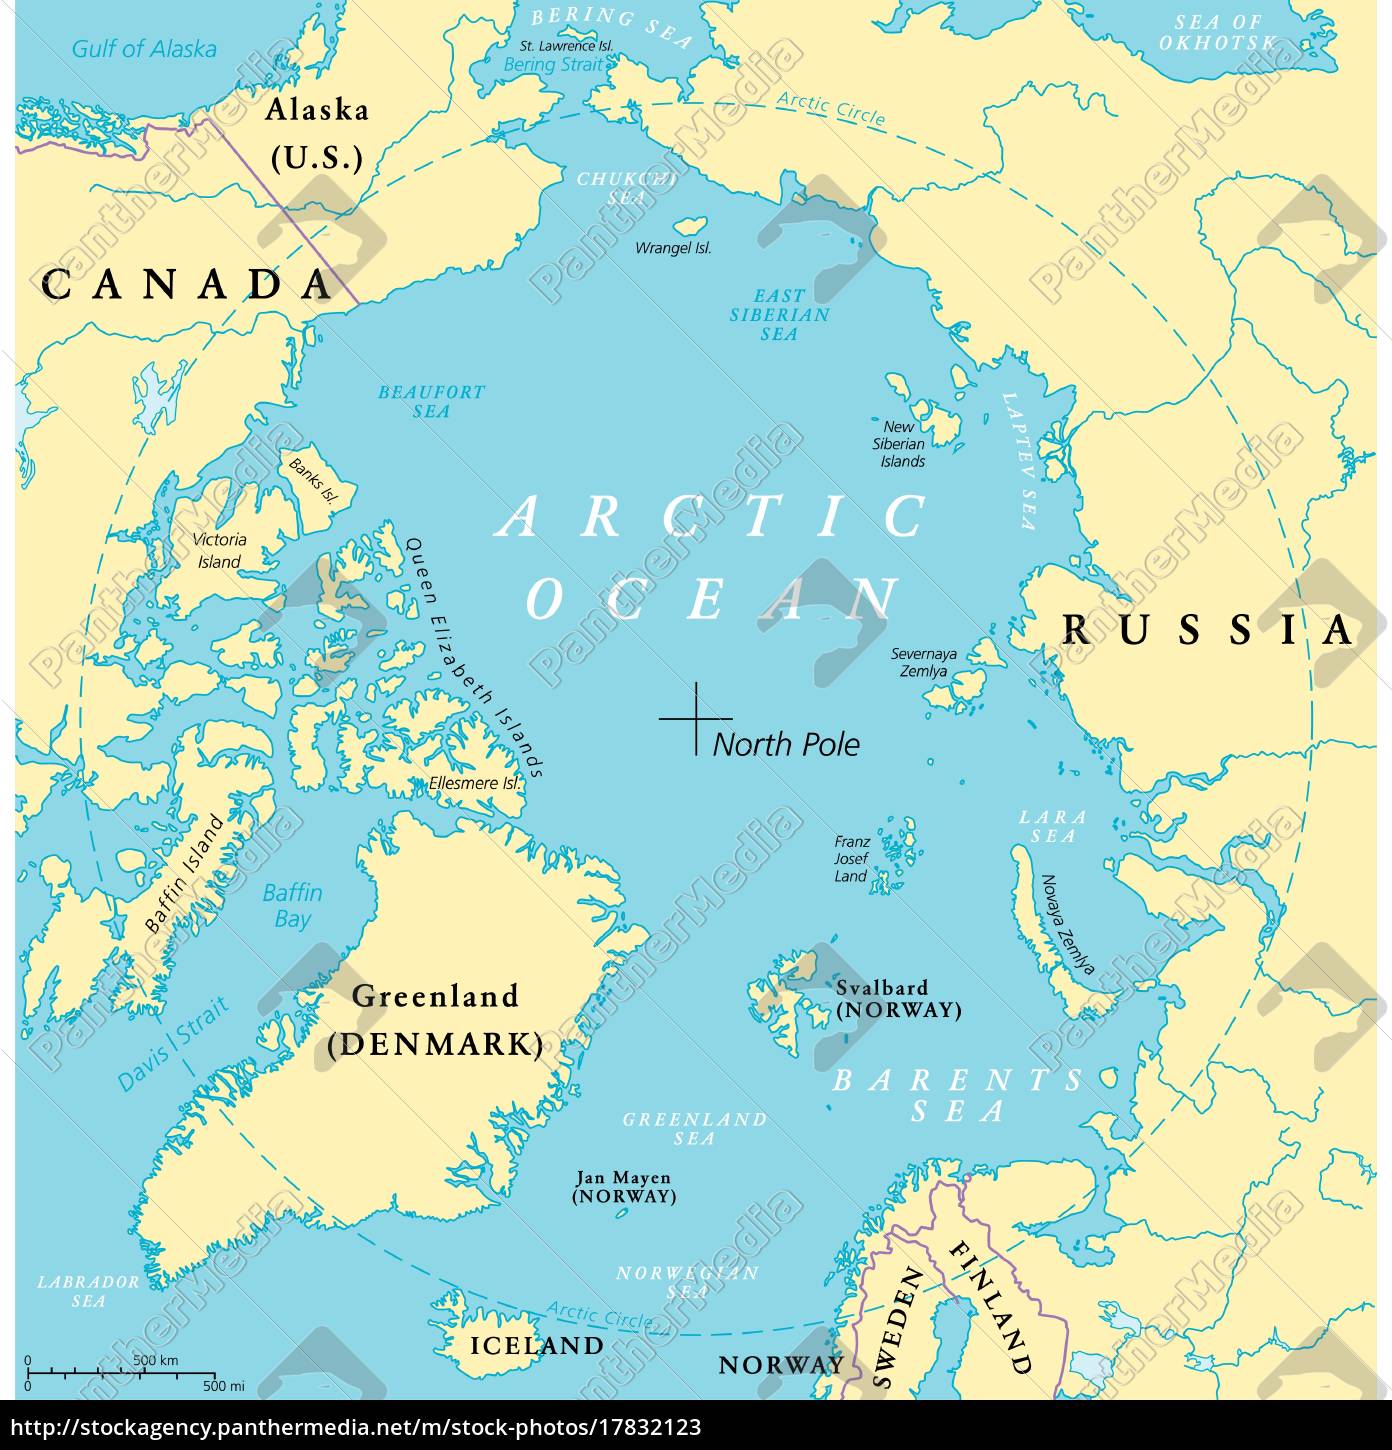 Arctic Ocean Map - Royalty free image - #17832123 | PantherMedia Stock